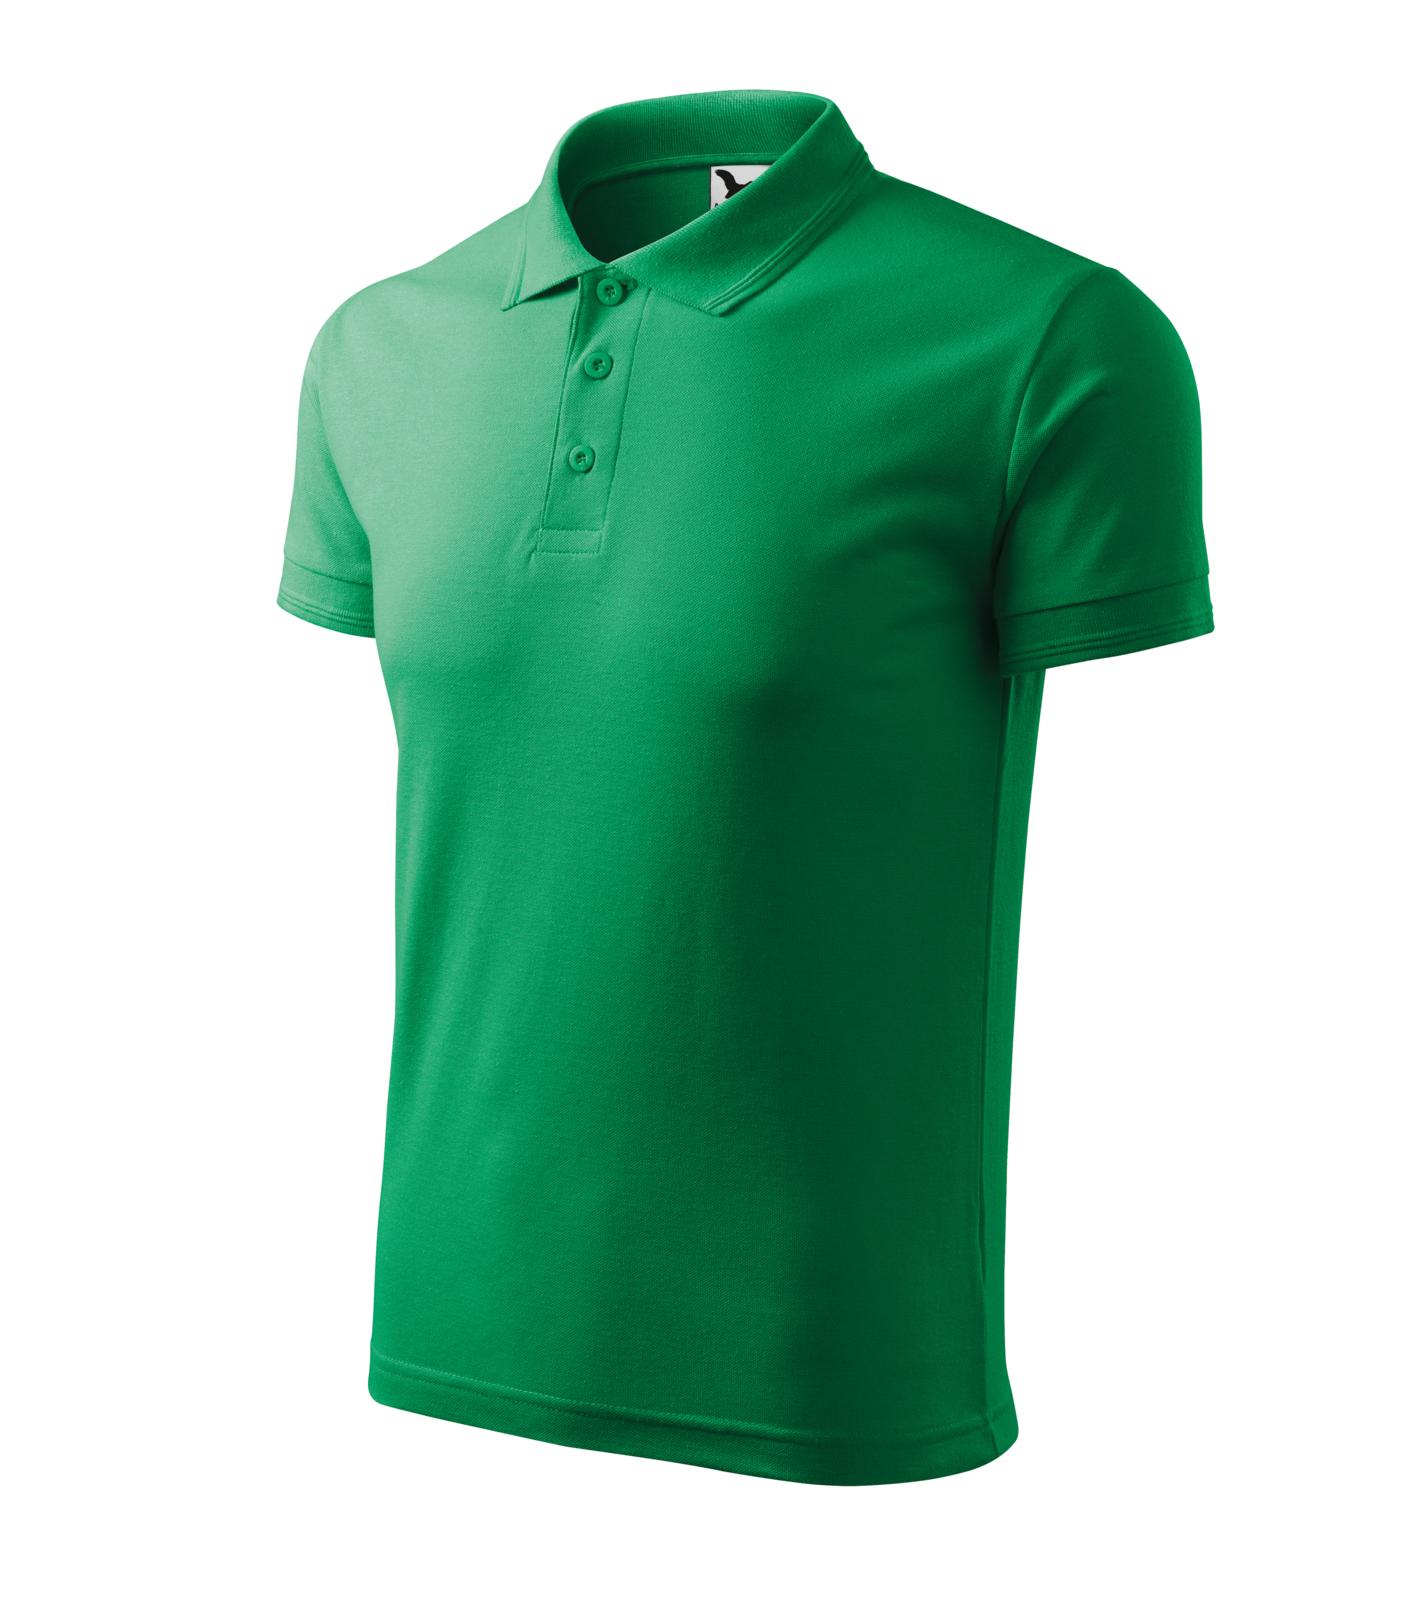 Pique Polo Polokošile pánská Barva: středně zelená, Velikost: XL